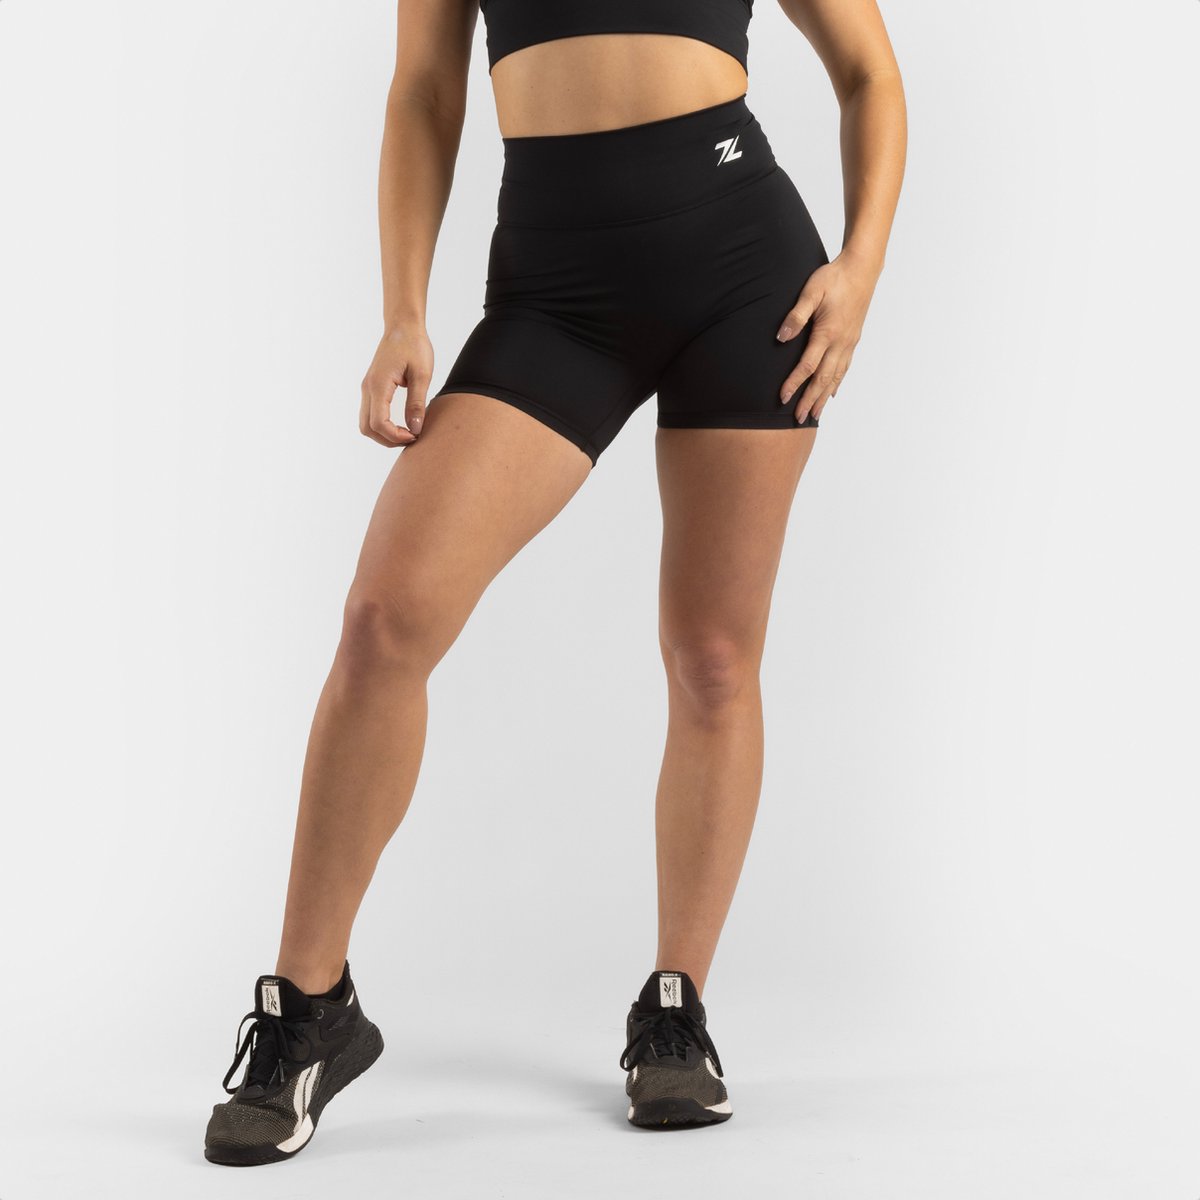 ZEUZ Korte Sport Legging Dames High Waist - Sportkleding & Sportlegging Squat Proof - Fitness & Crossfit - Hardloopbroek, Yoga Broek - 70% Nylon & 30% Elastaan - Zwart - Maat XL